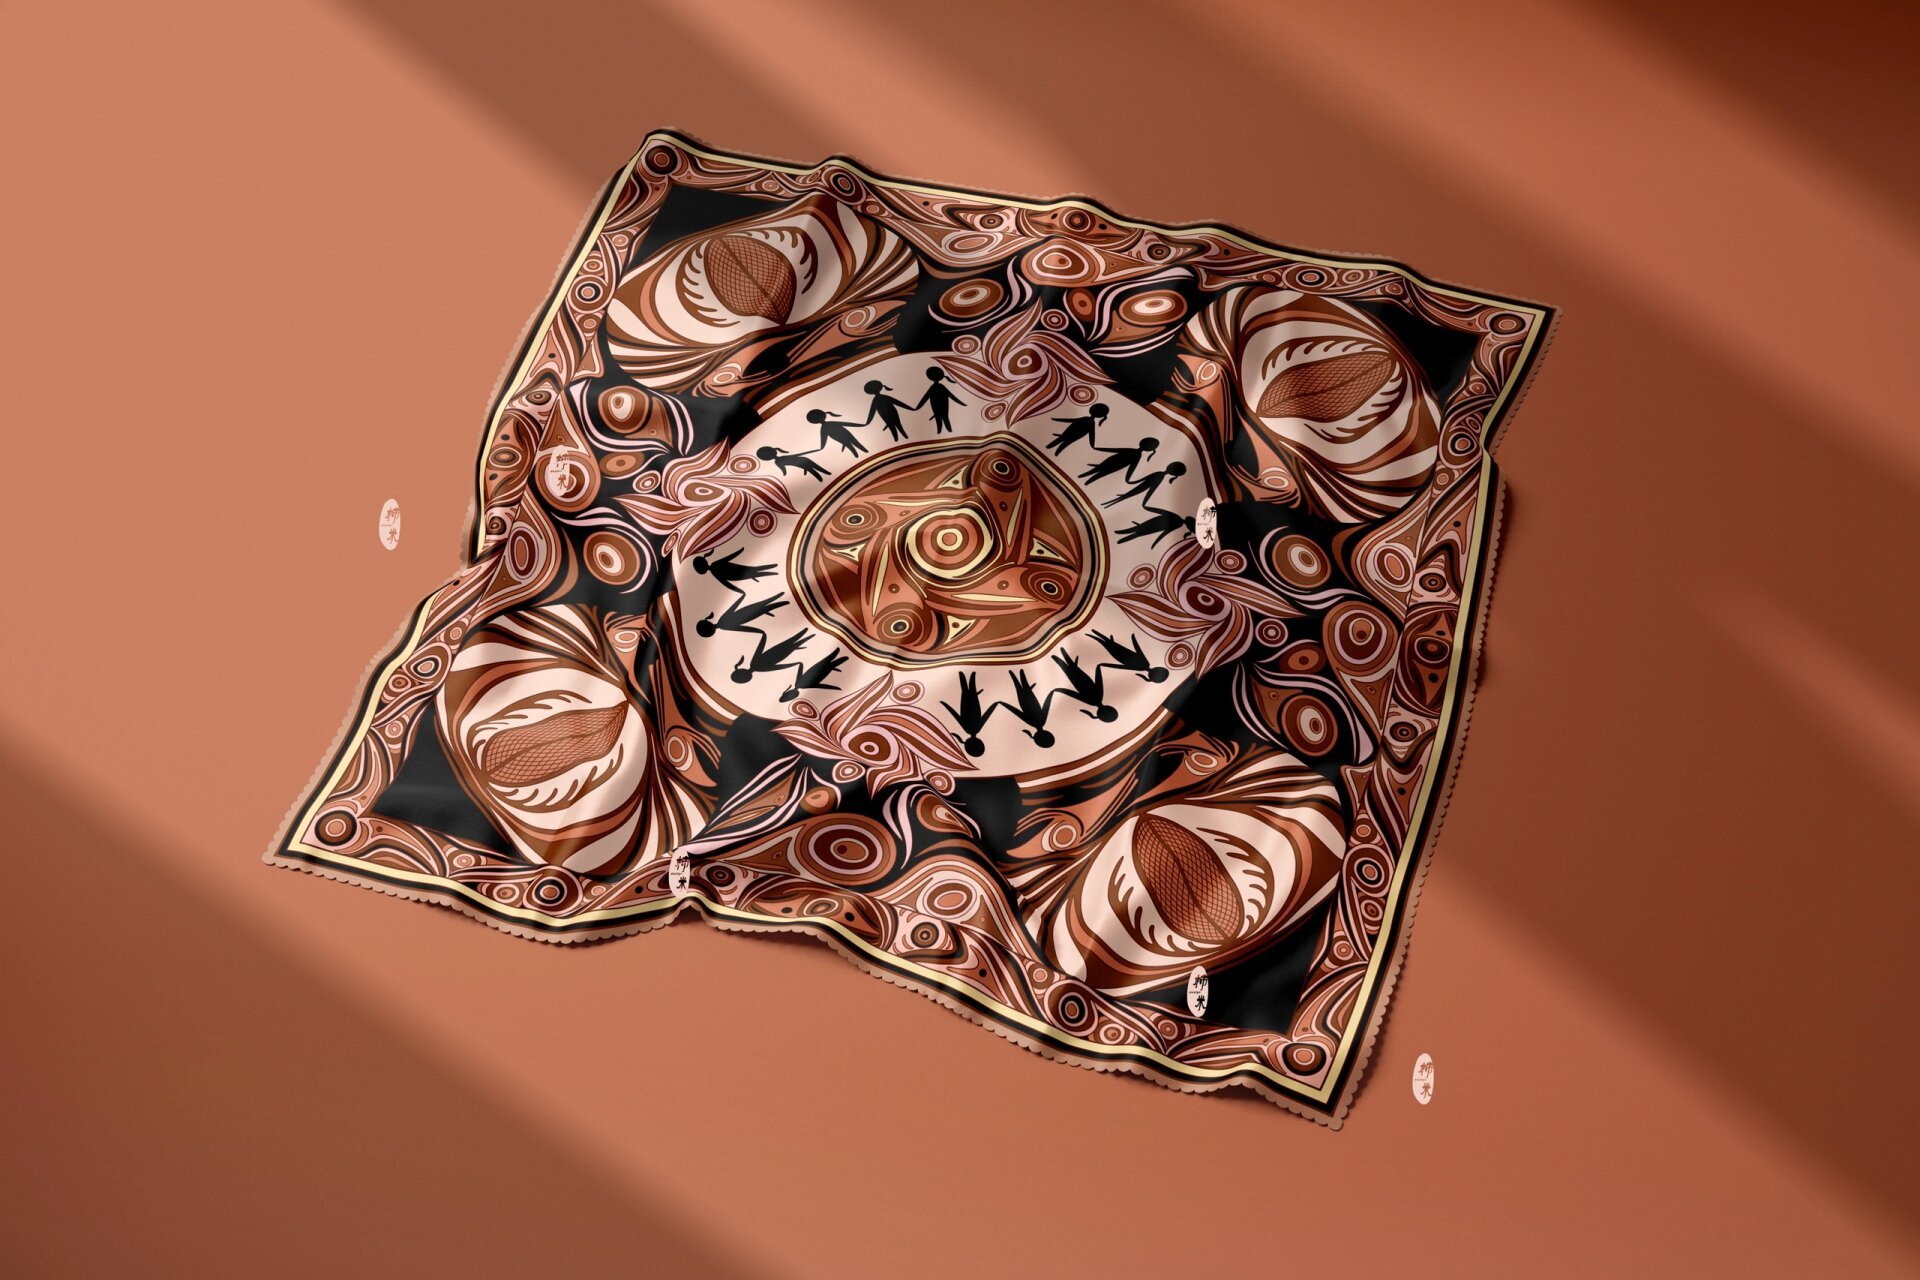 马家窑彩陶纹样丝巾设计 马家窑文化文创类设计主要提取马家窑陶器的